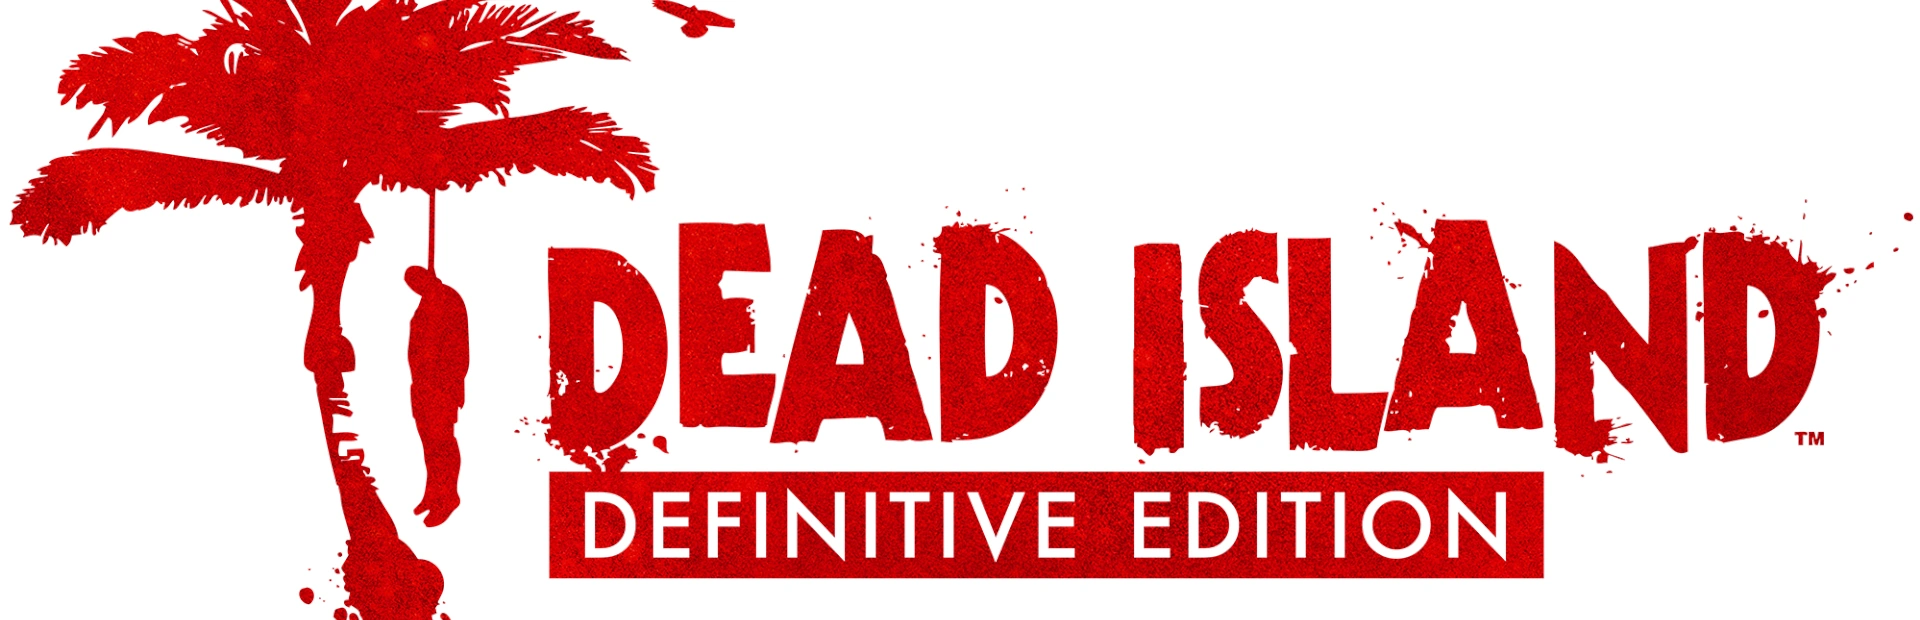 دانلود بازی Dead Island Definitive Edition برای PC | گیمباتو